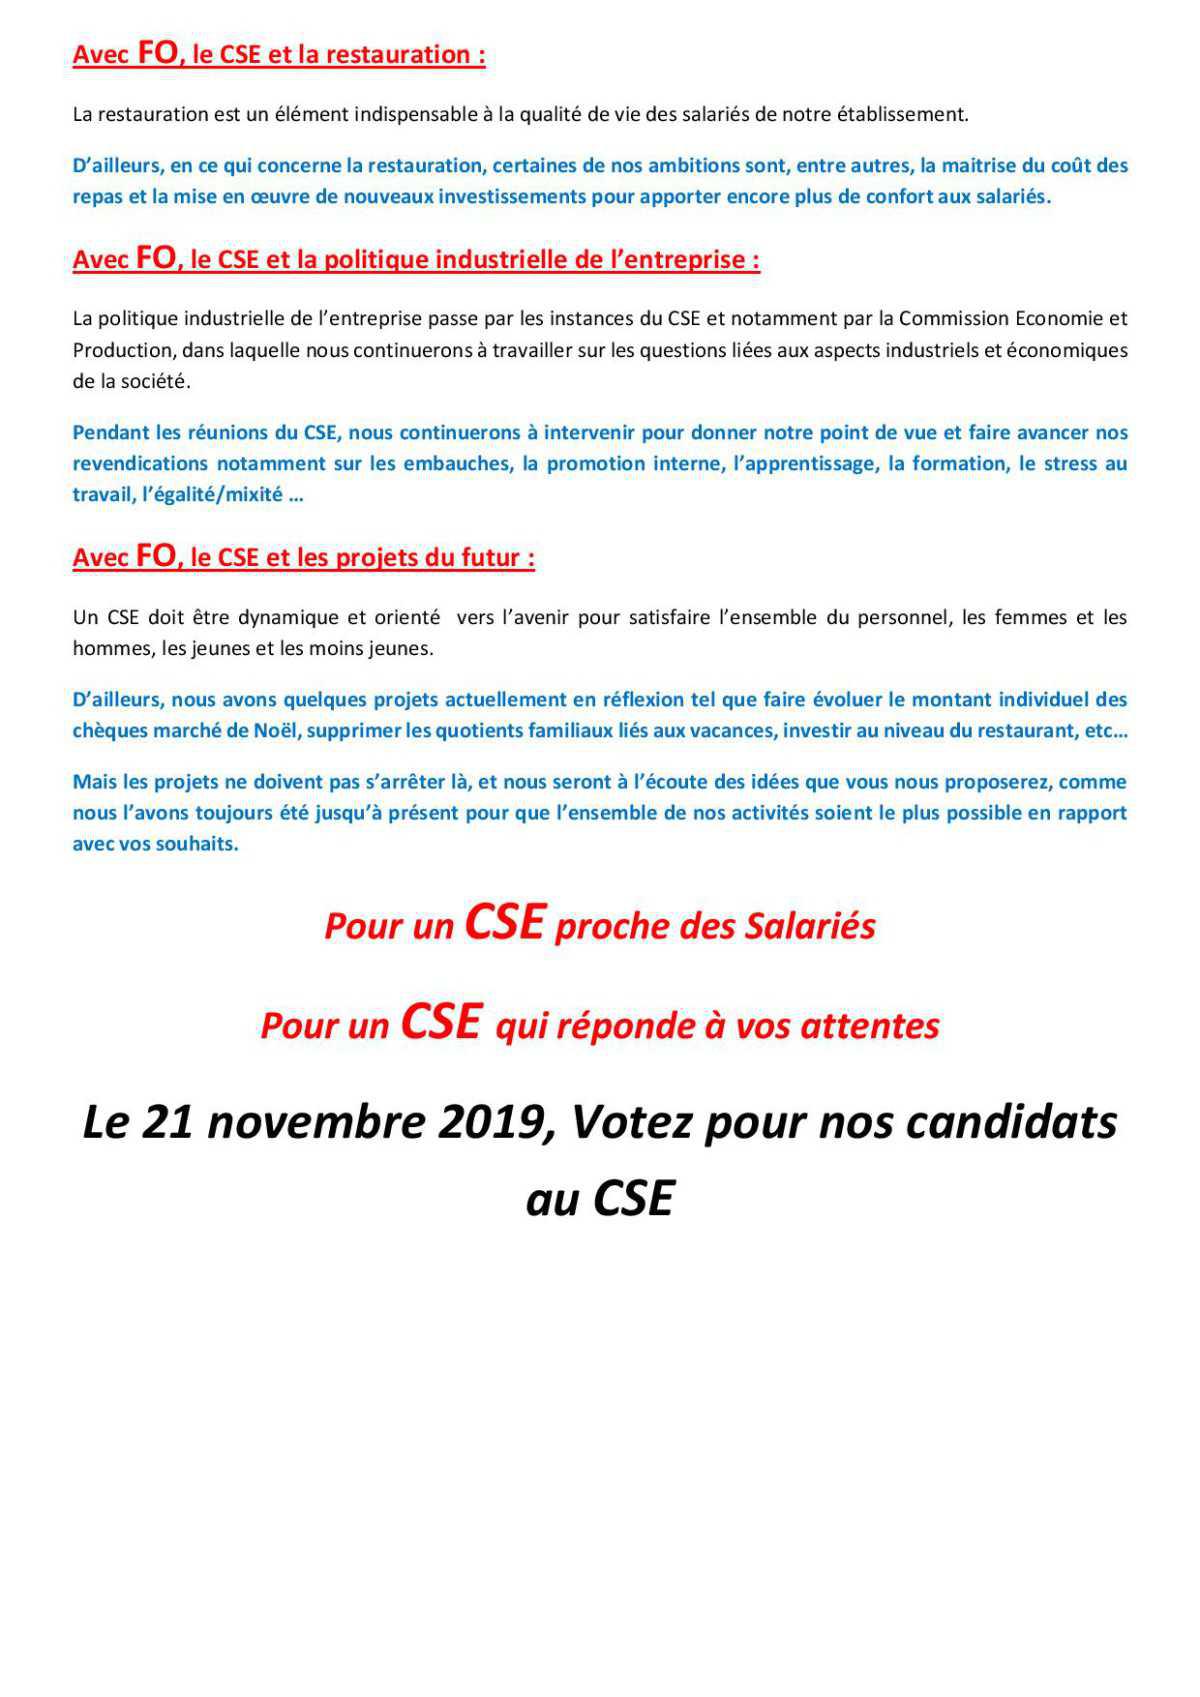 Elections du CSE du 21 Novembre, le vote qui vous engage